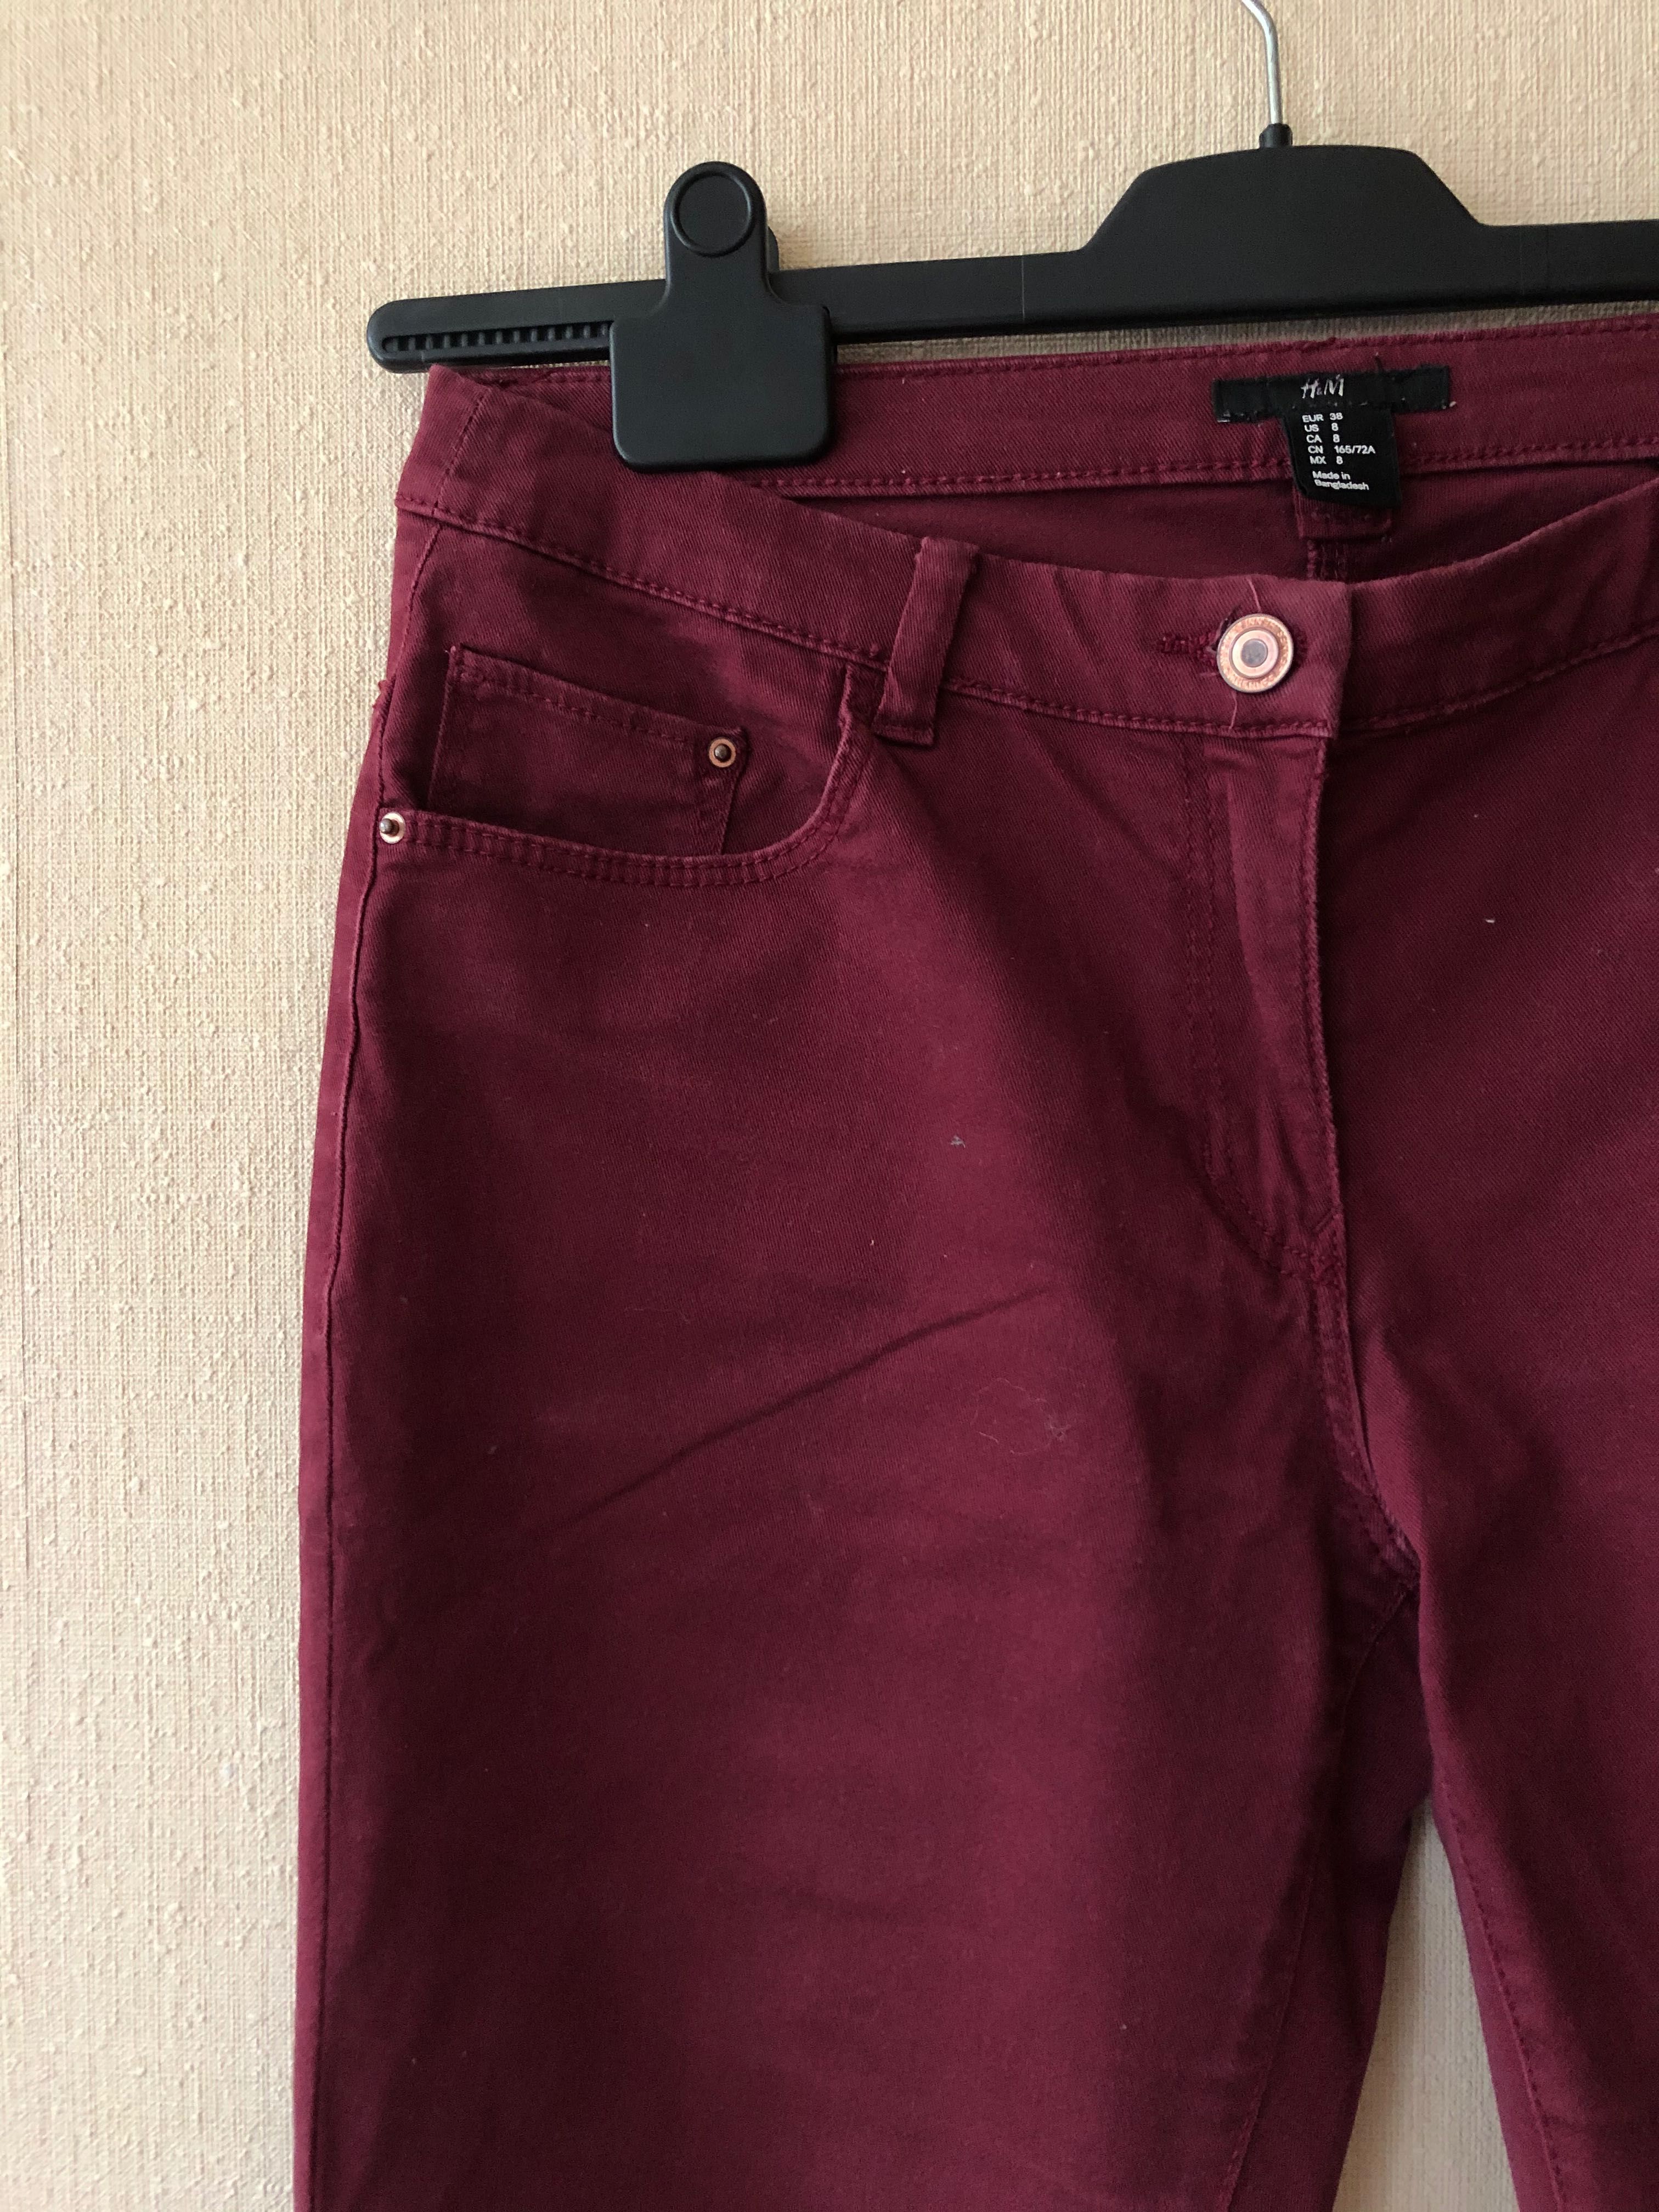 H&M spodnie wąskie/prosta nogawka bordowe